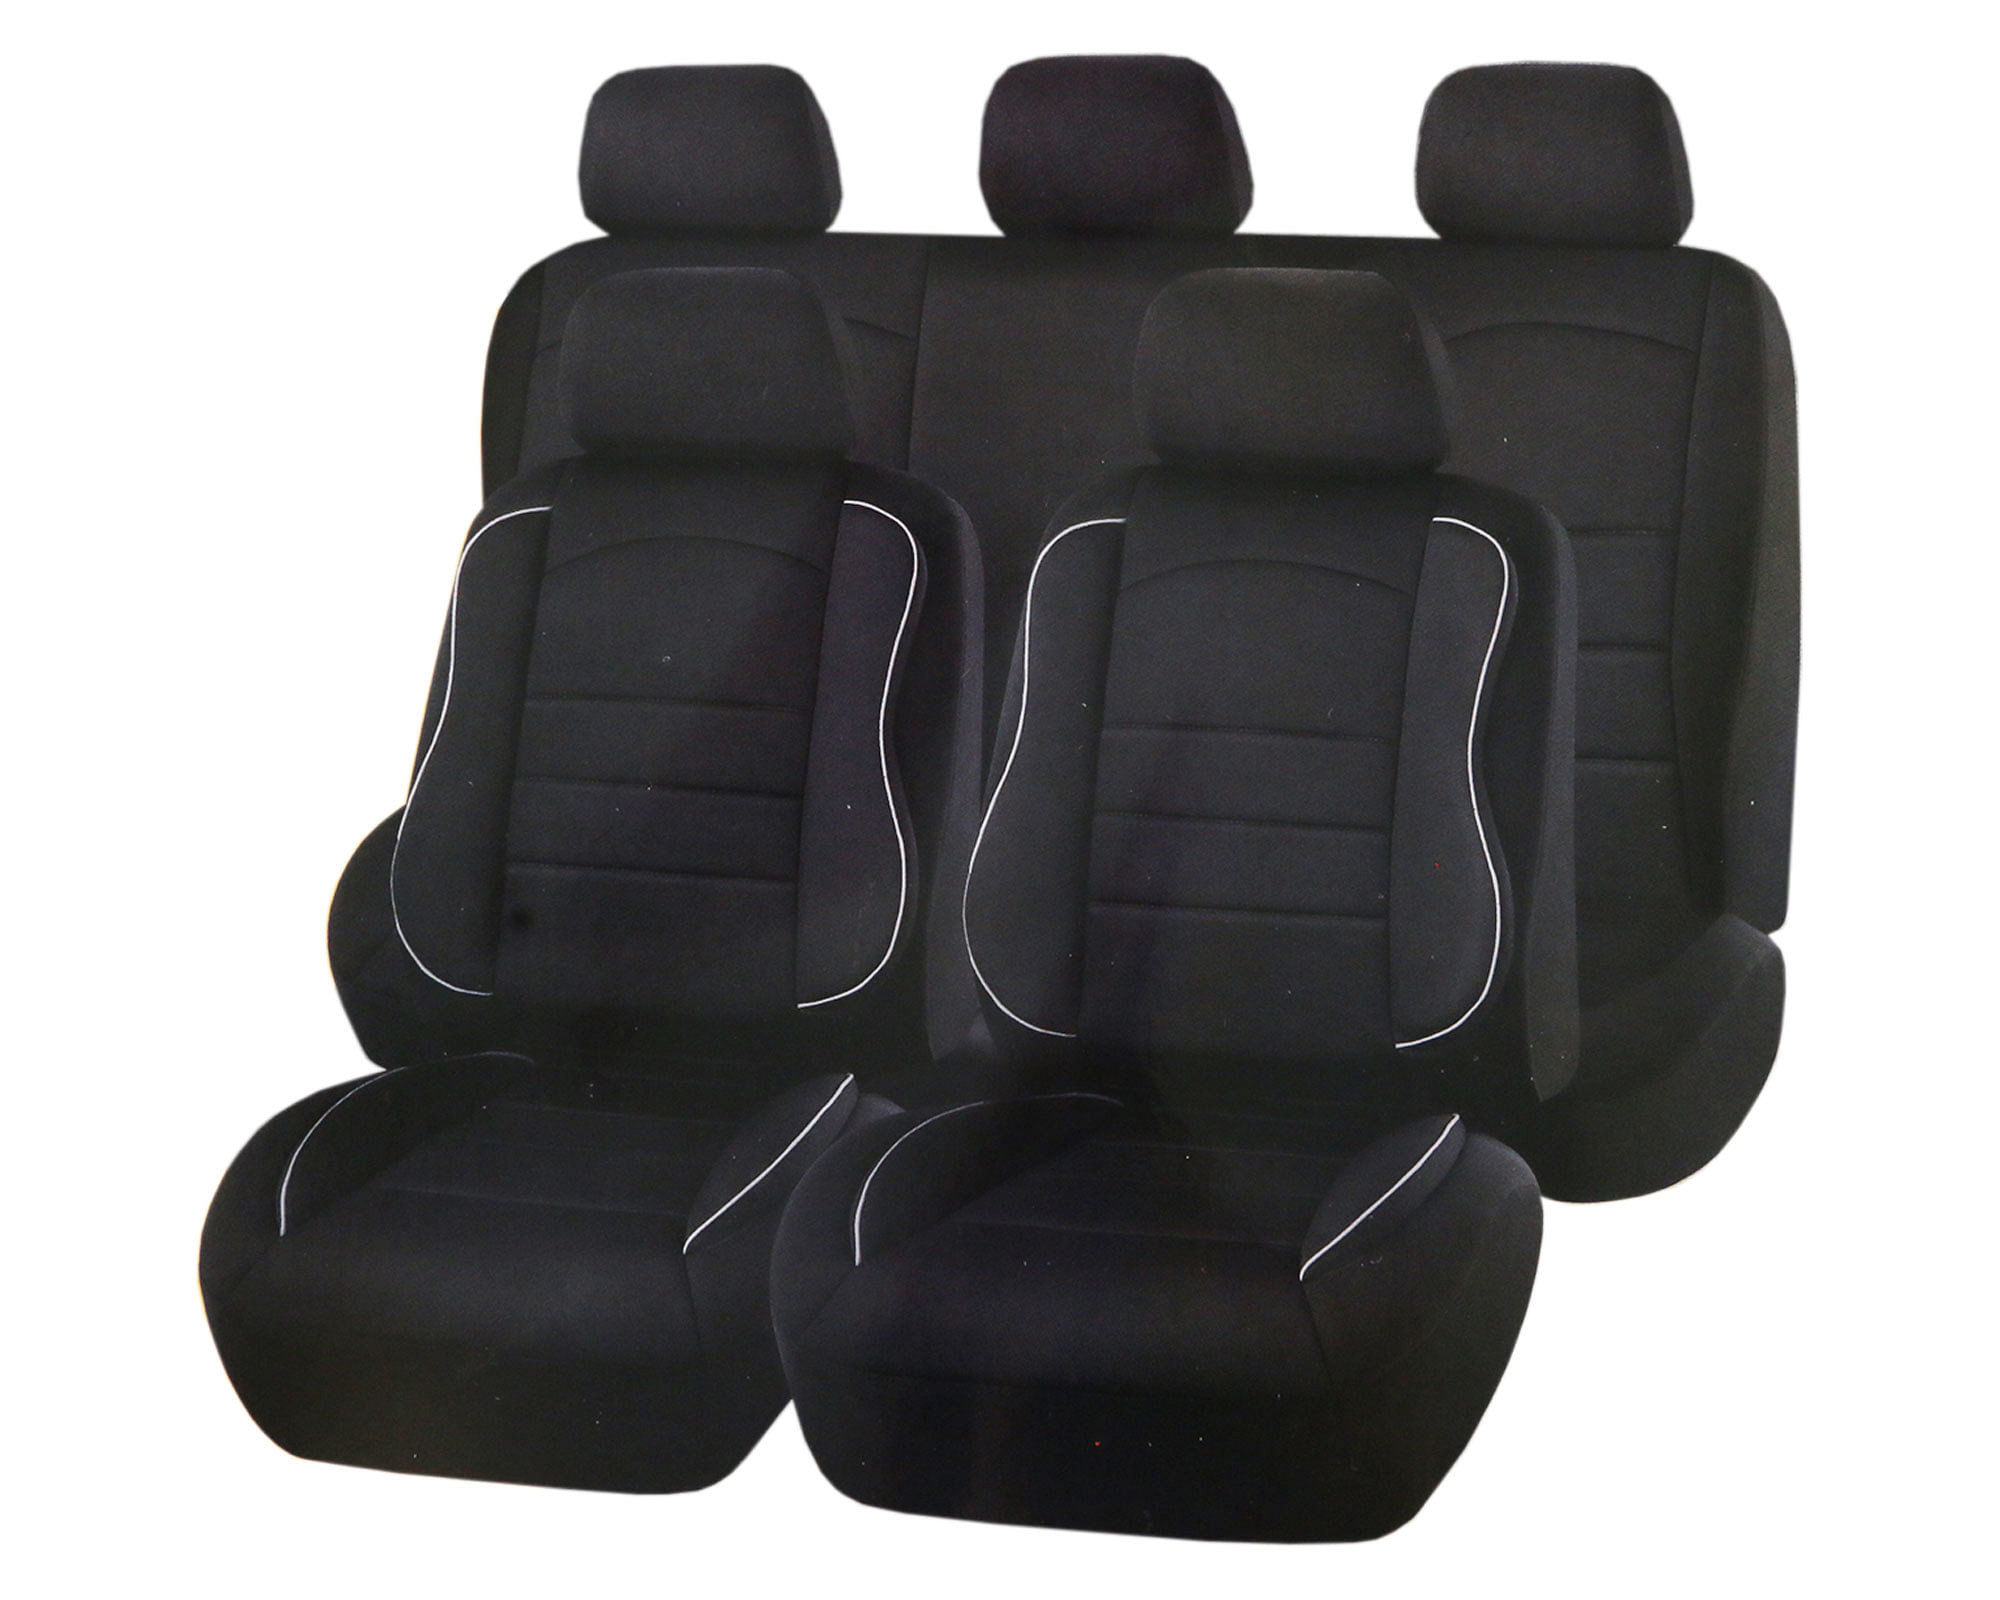 Con cubre asientos para auto viajas tranquilo y cómodo